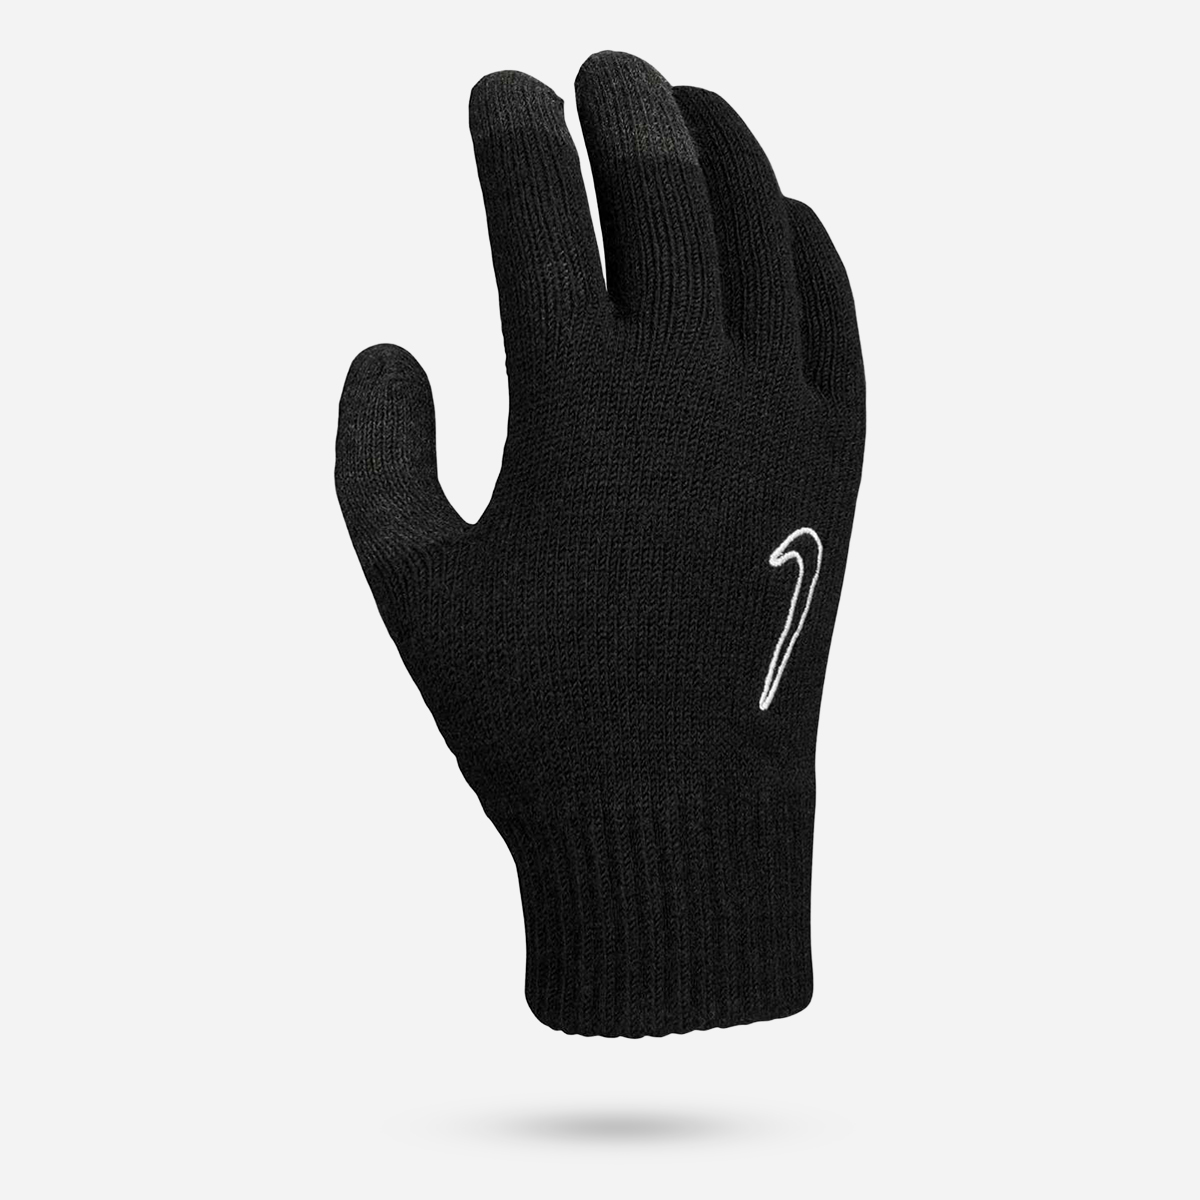 AN262004 Knitted Tech Grip Gloves 2.0